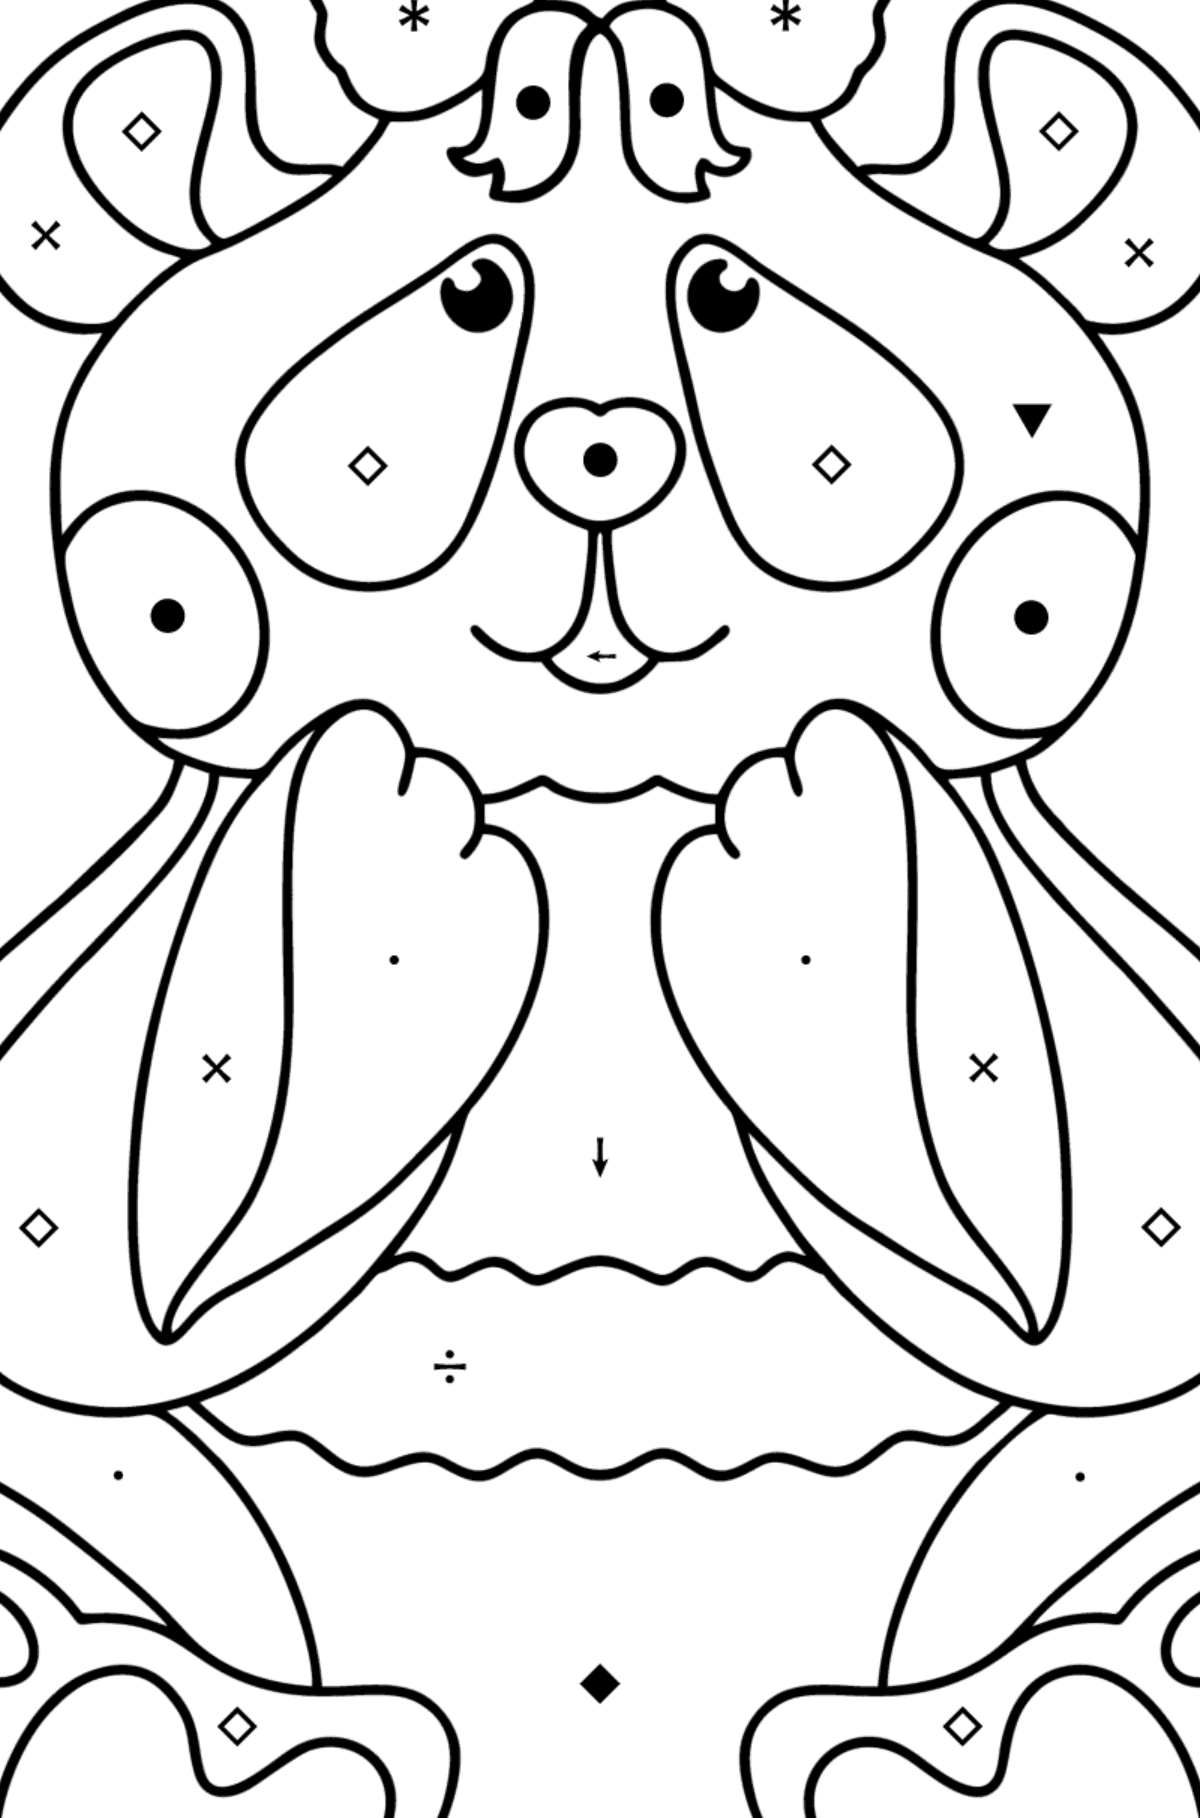 Kolorowanka panda kochanie - Kolorowanie według symboli dla dzieci